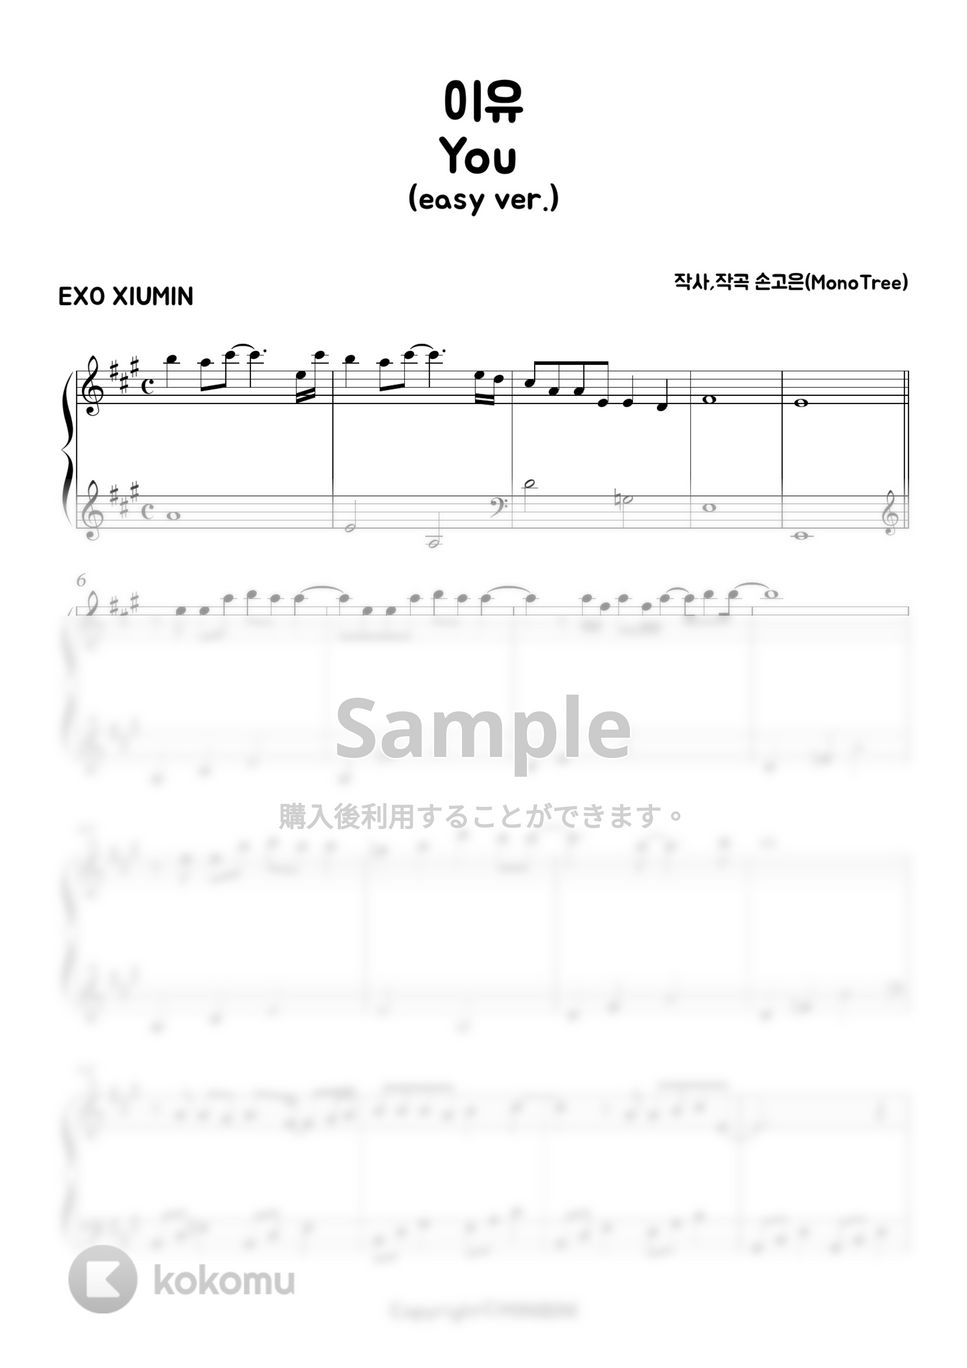 Exo Xiumin - You (Easy ver.) by MINIBINI